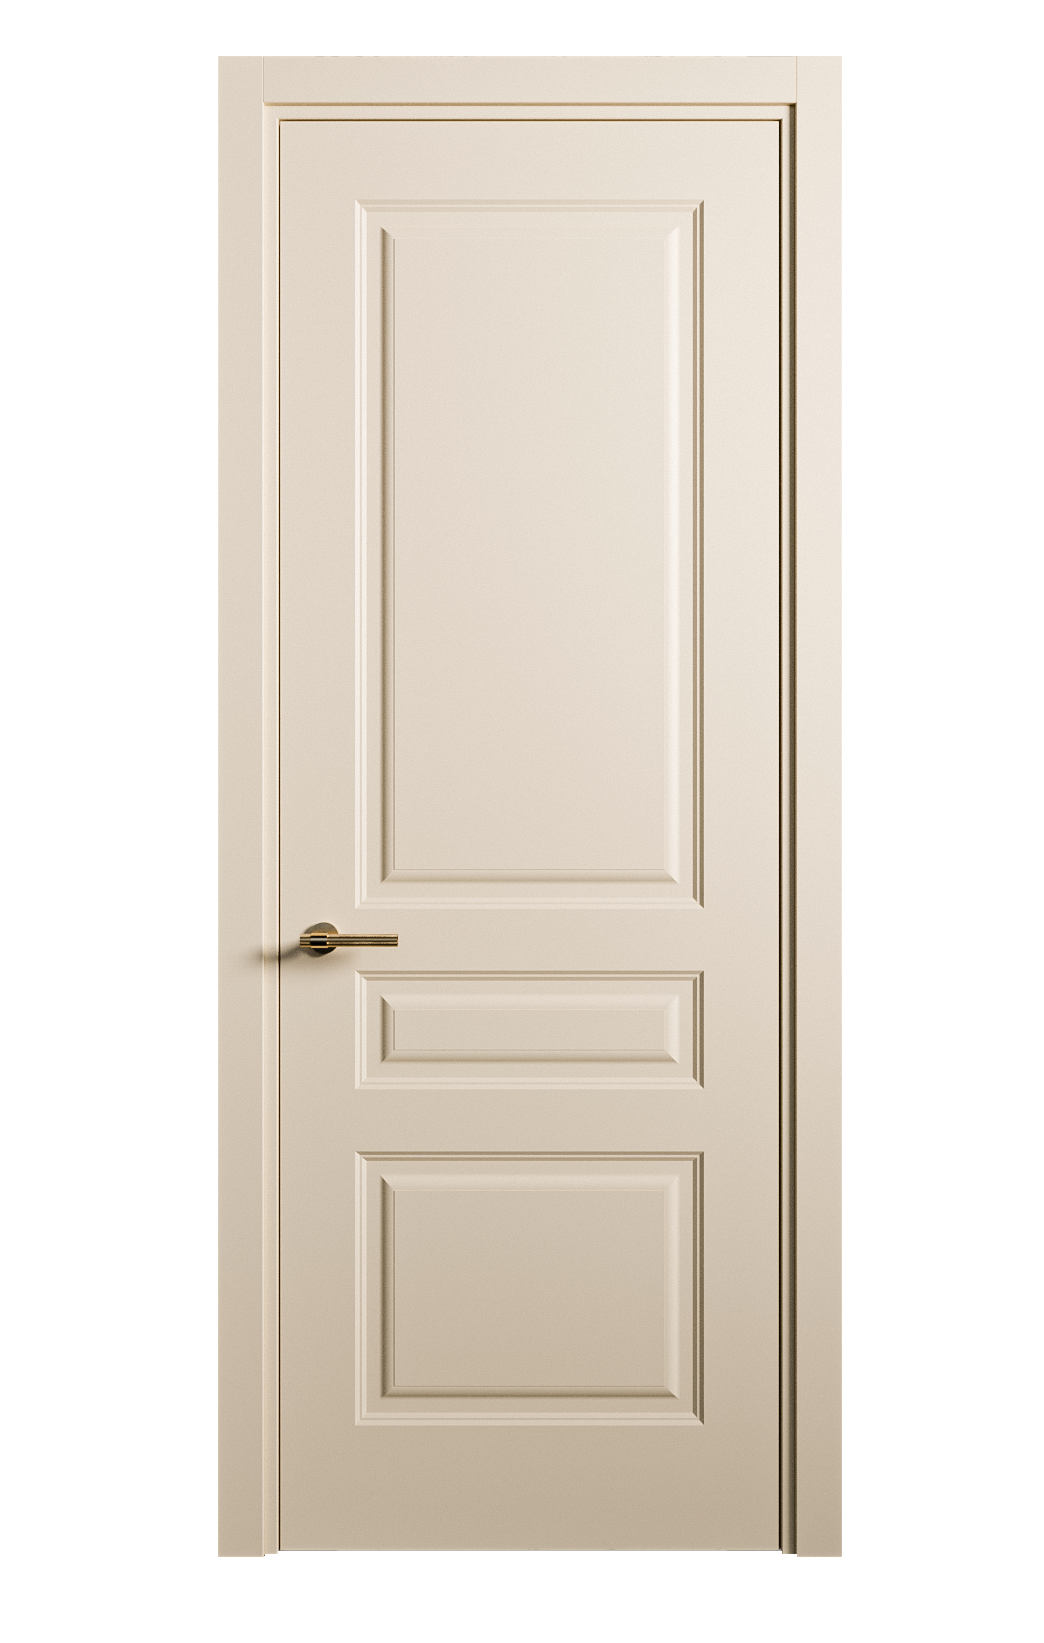 Межкомнатная дверь Вита-2 глухая эмаль ral 1015 26371